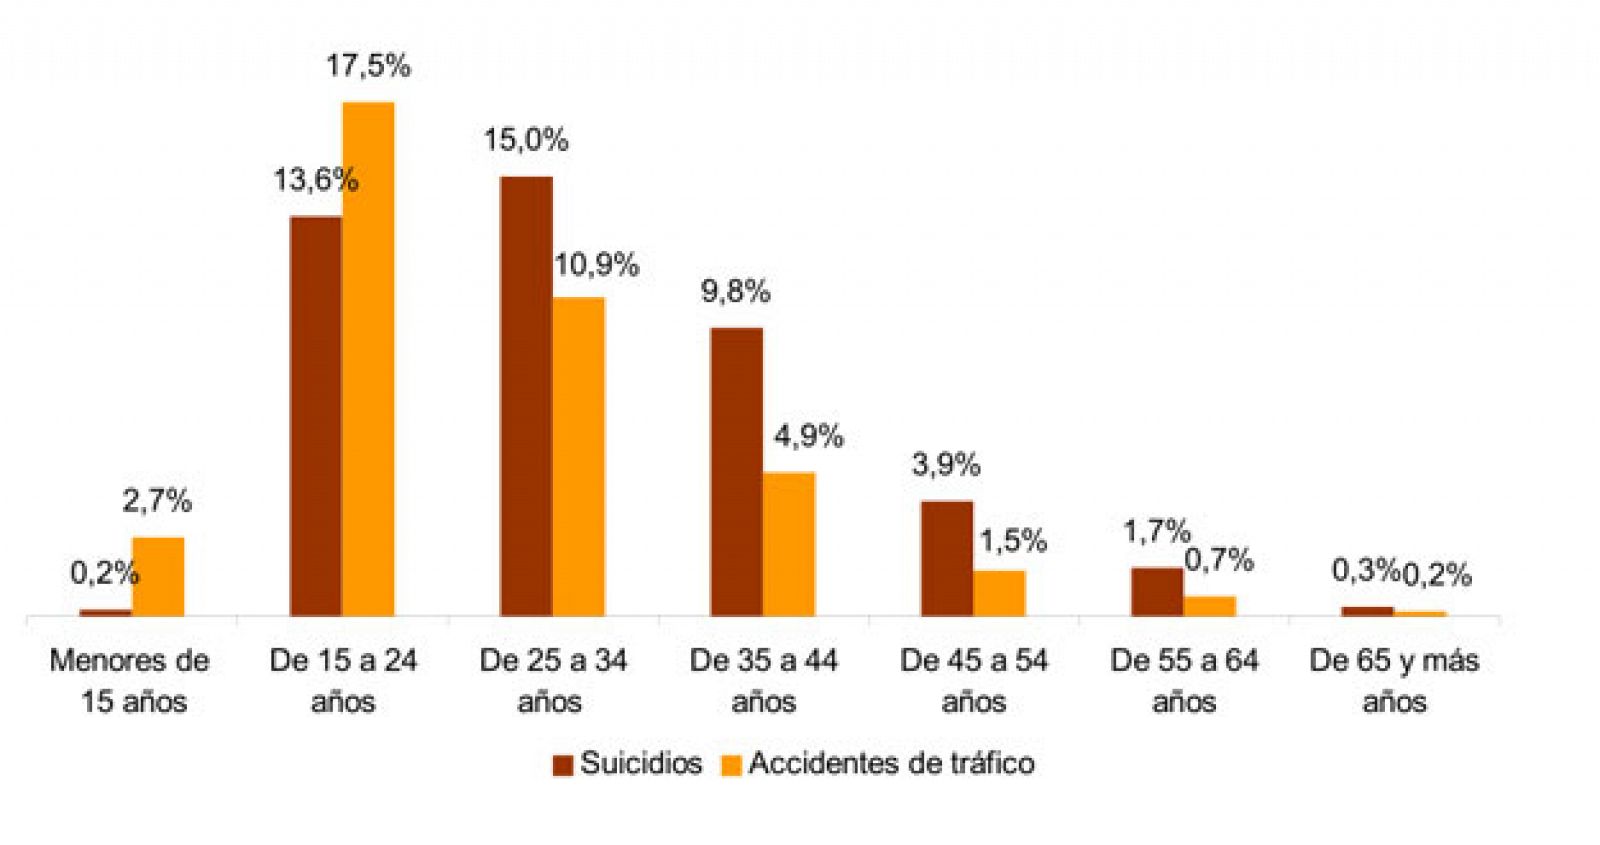 Porcentaje de fallecidos por suicidio y accidentes de tráfico sobre total de defunciones por edad. Año 2012